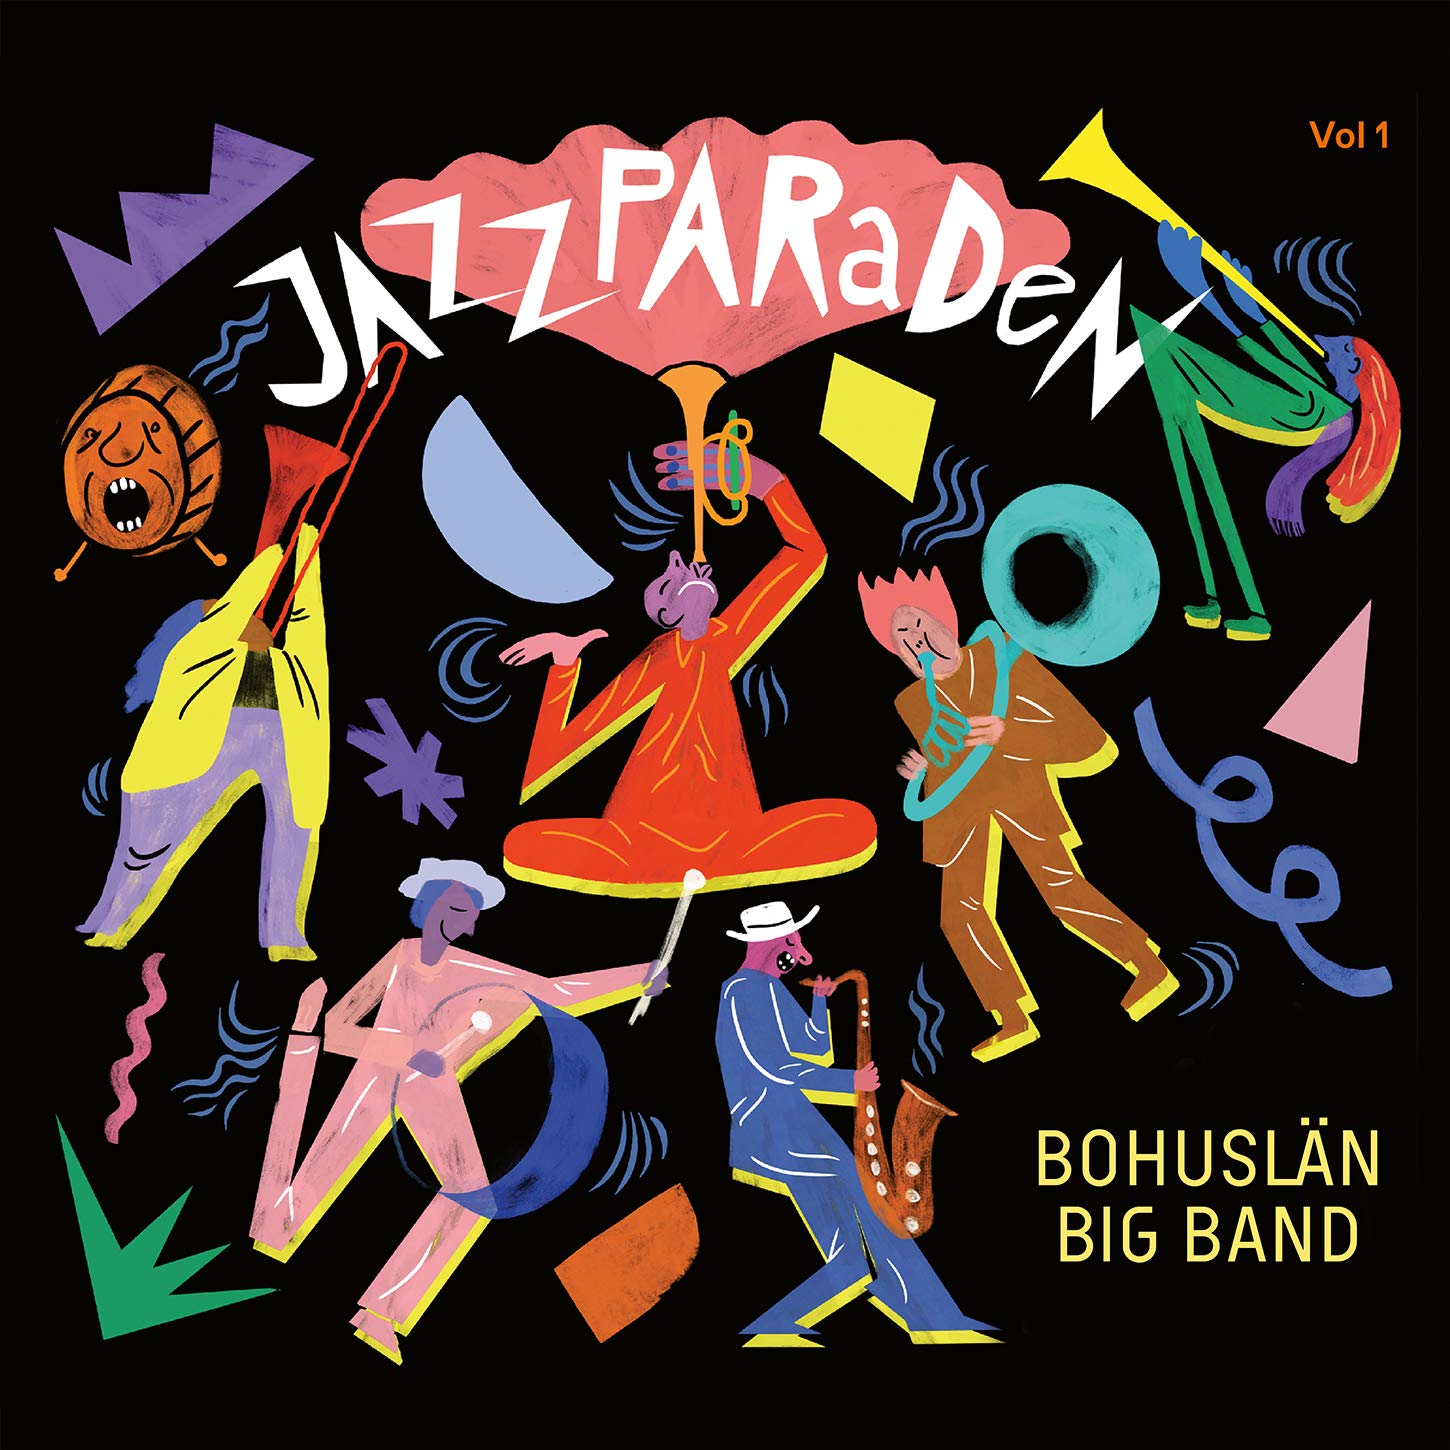 BOHUSLÄN BIG BAND - Jazzparaden cover 